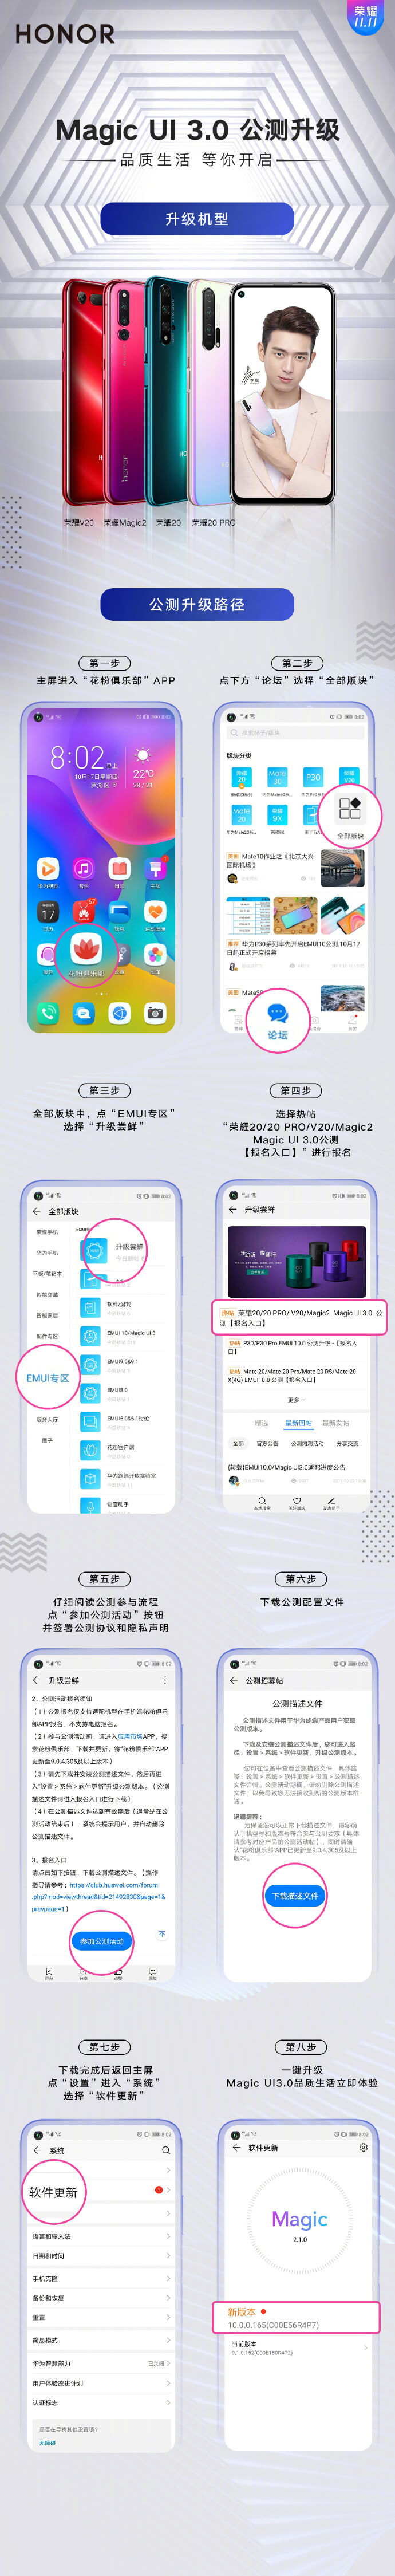 现在流行的手机，荣耀正式启动 Magic UI 3.0 升级公测申请